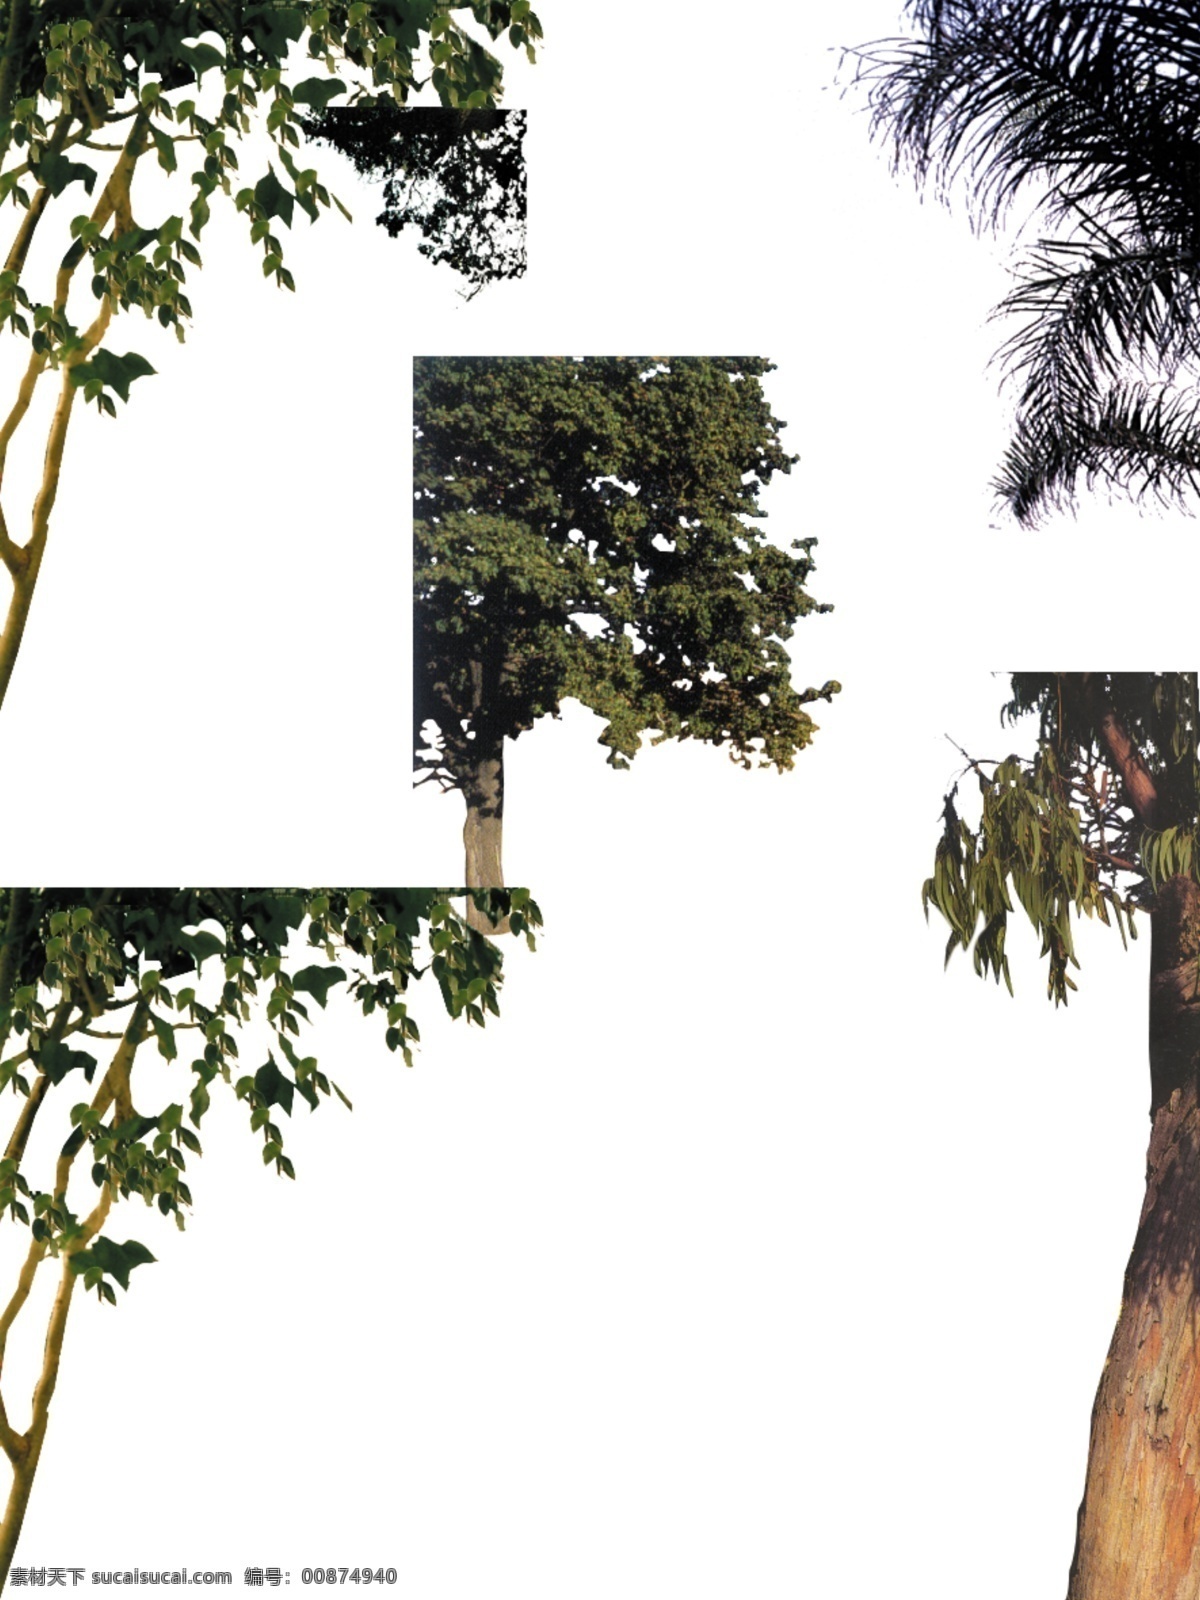 分层 ps后期素材 风景 景观 绿化 树木 园林 源文件 配景 模板下载 配景树木 植物 ps后期配景 装饰素材 园林景观设计